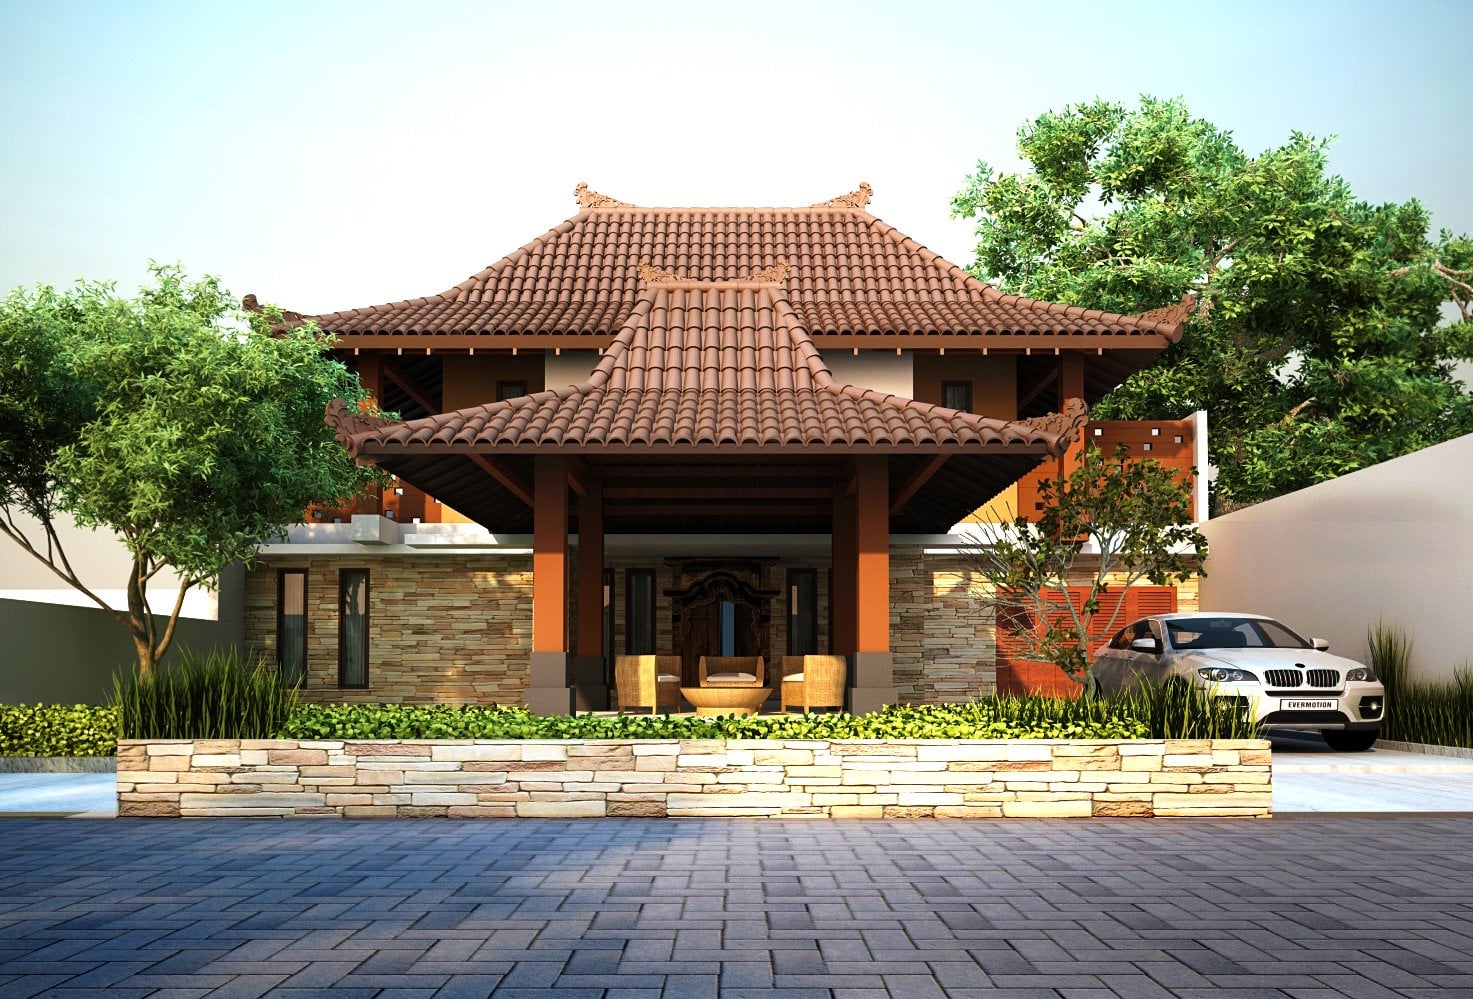 Terbaik 21 Gambar Rumah Joglo Jawa Tengah 41 Dalam Dekorasi Rumah Inspiratif oleh 21 Gambar Rumah Joglo Jawa Tengah